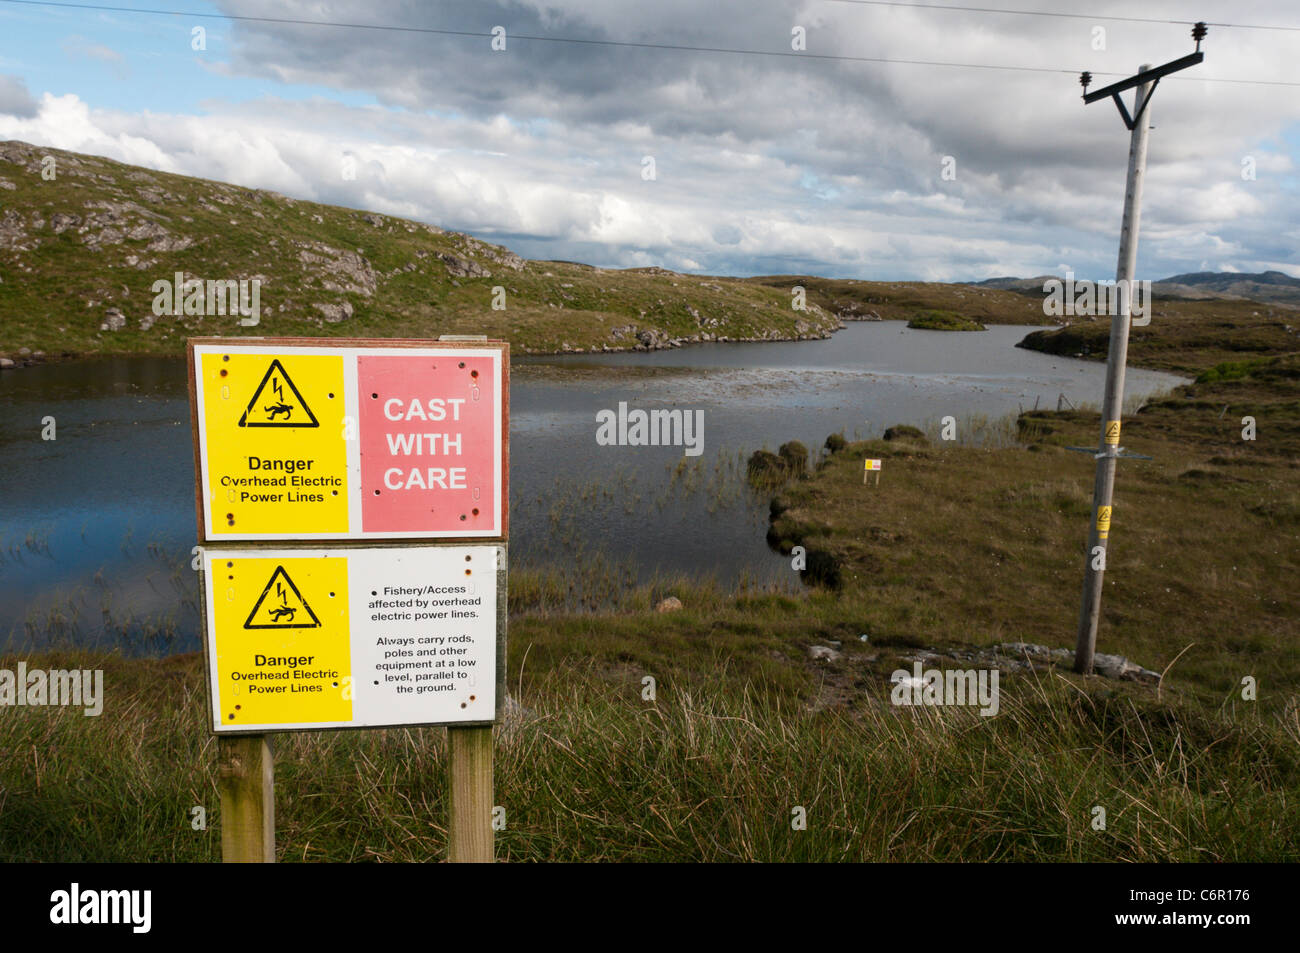 Un signe de la santé et de la sécurité met en garde contre les dangers de cannes à pêche de toucher les lignes électriques Banque D'Images